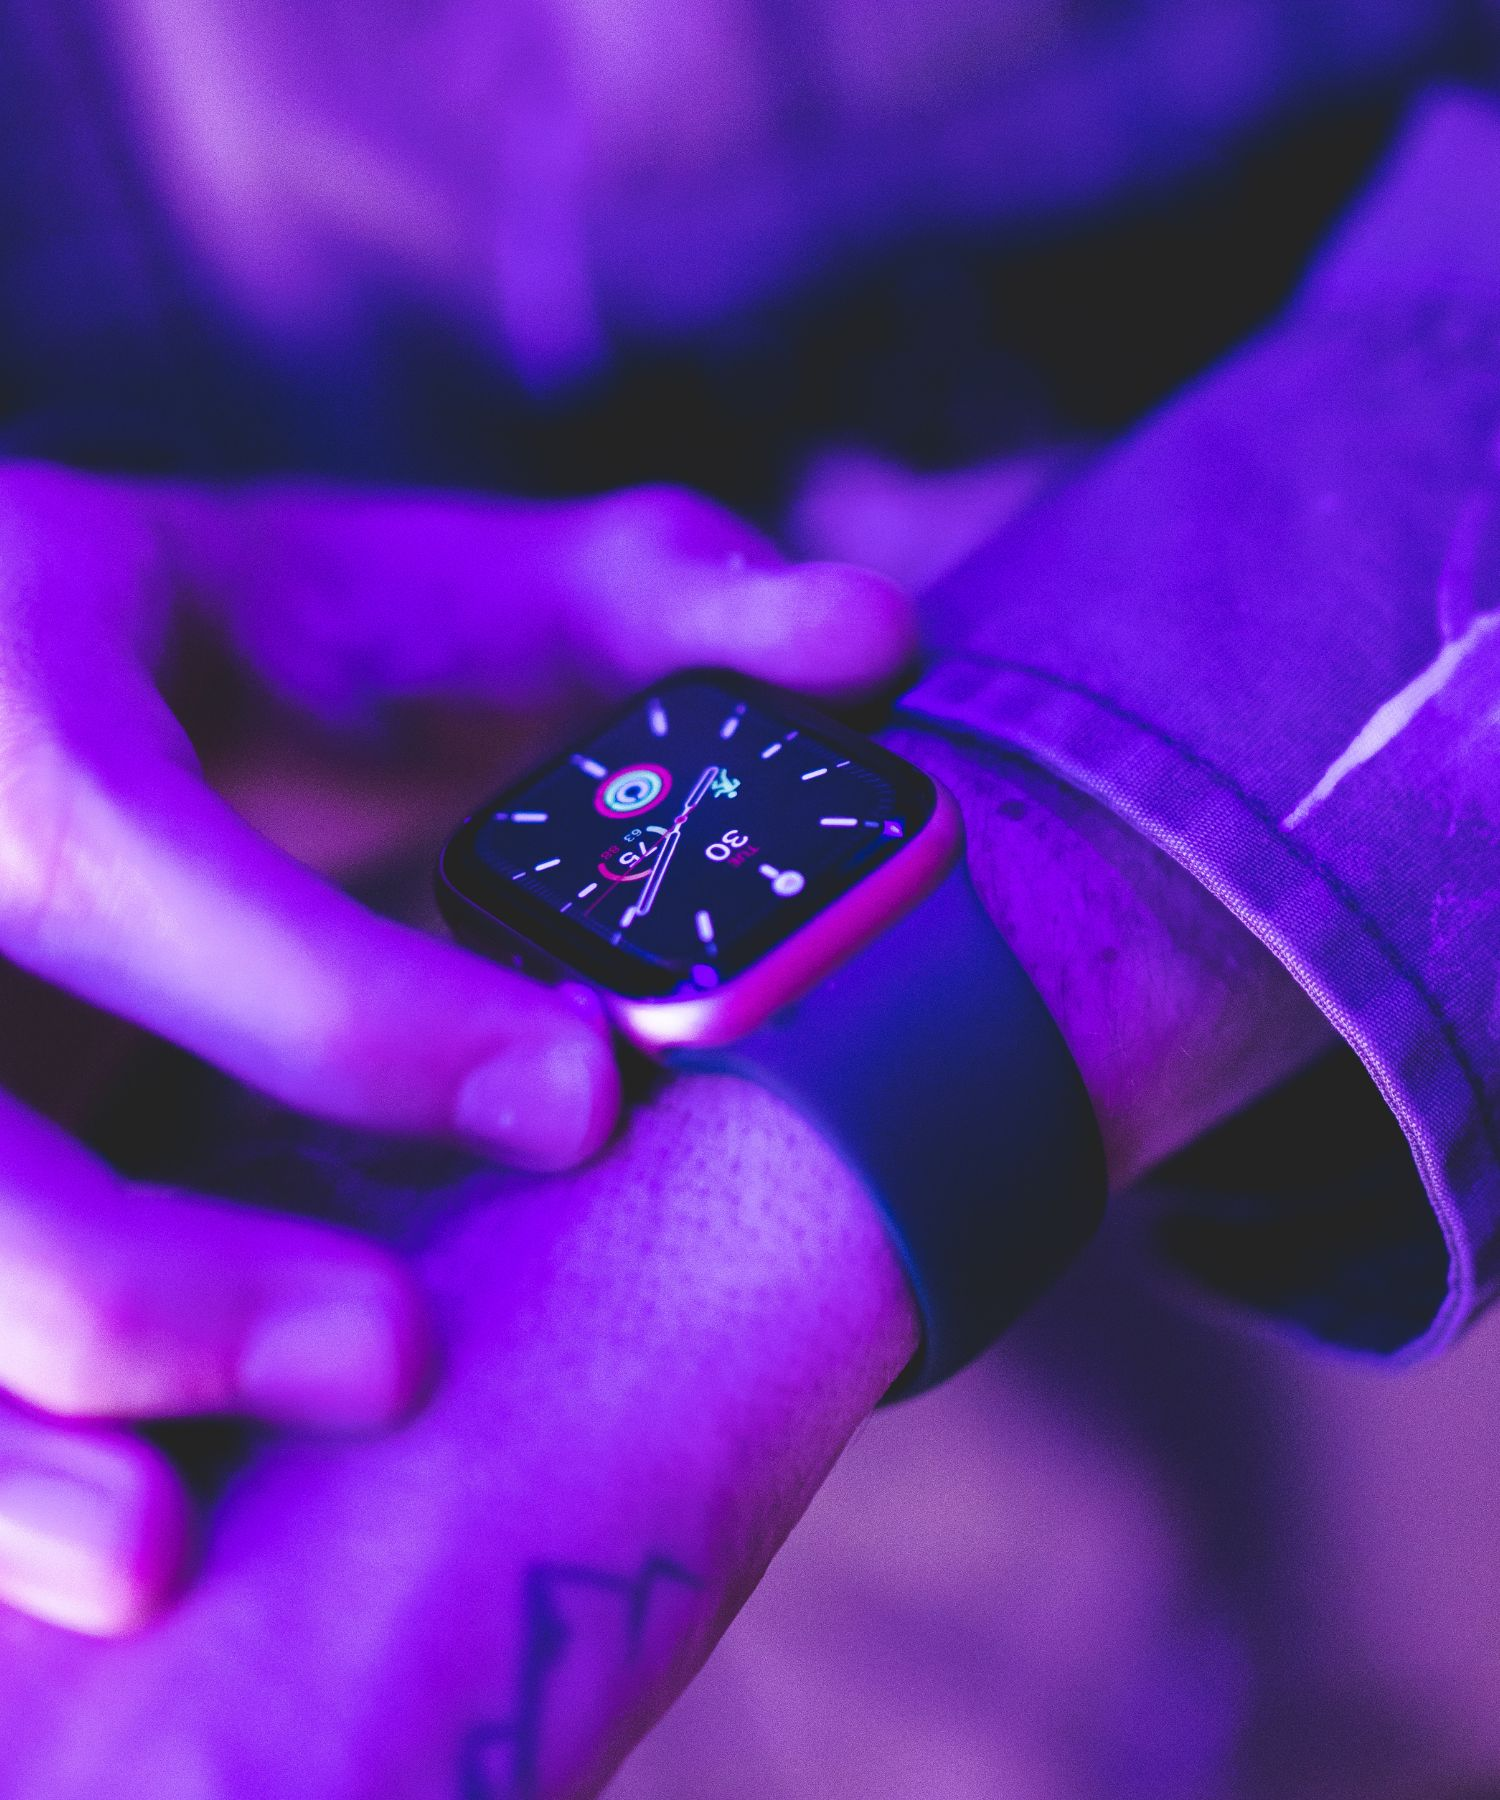 O Smartwatch é mais do que uma peça de tecnologia. É uma manifestação das possibilidades que a inovação tecnológica pode trazer para nossas vidas diárias